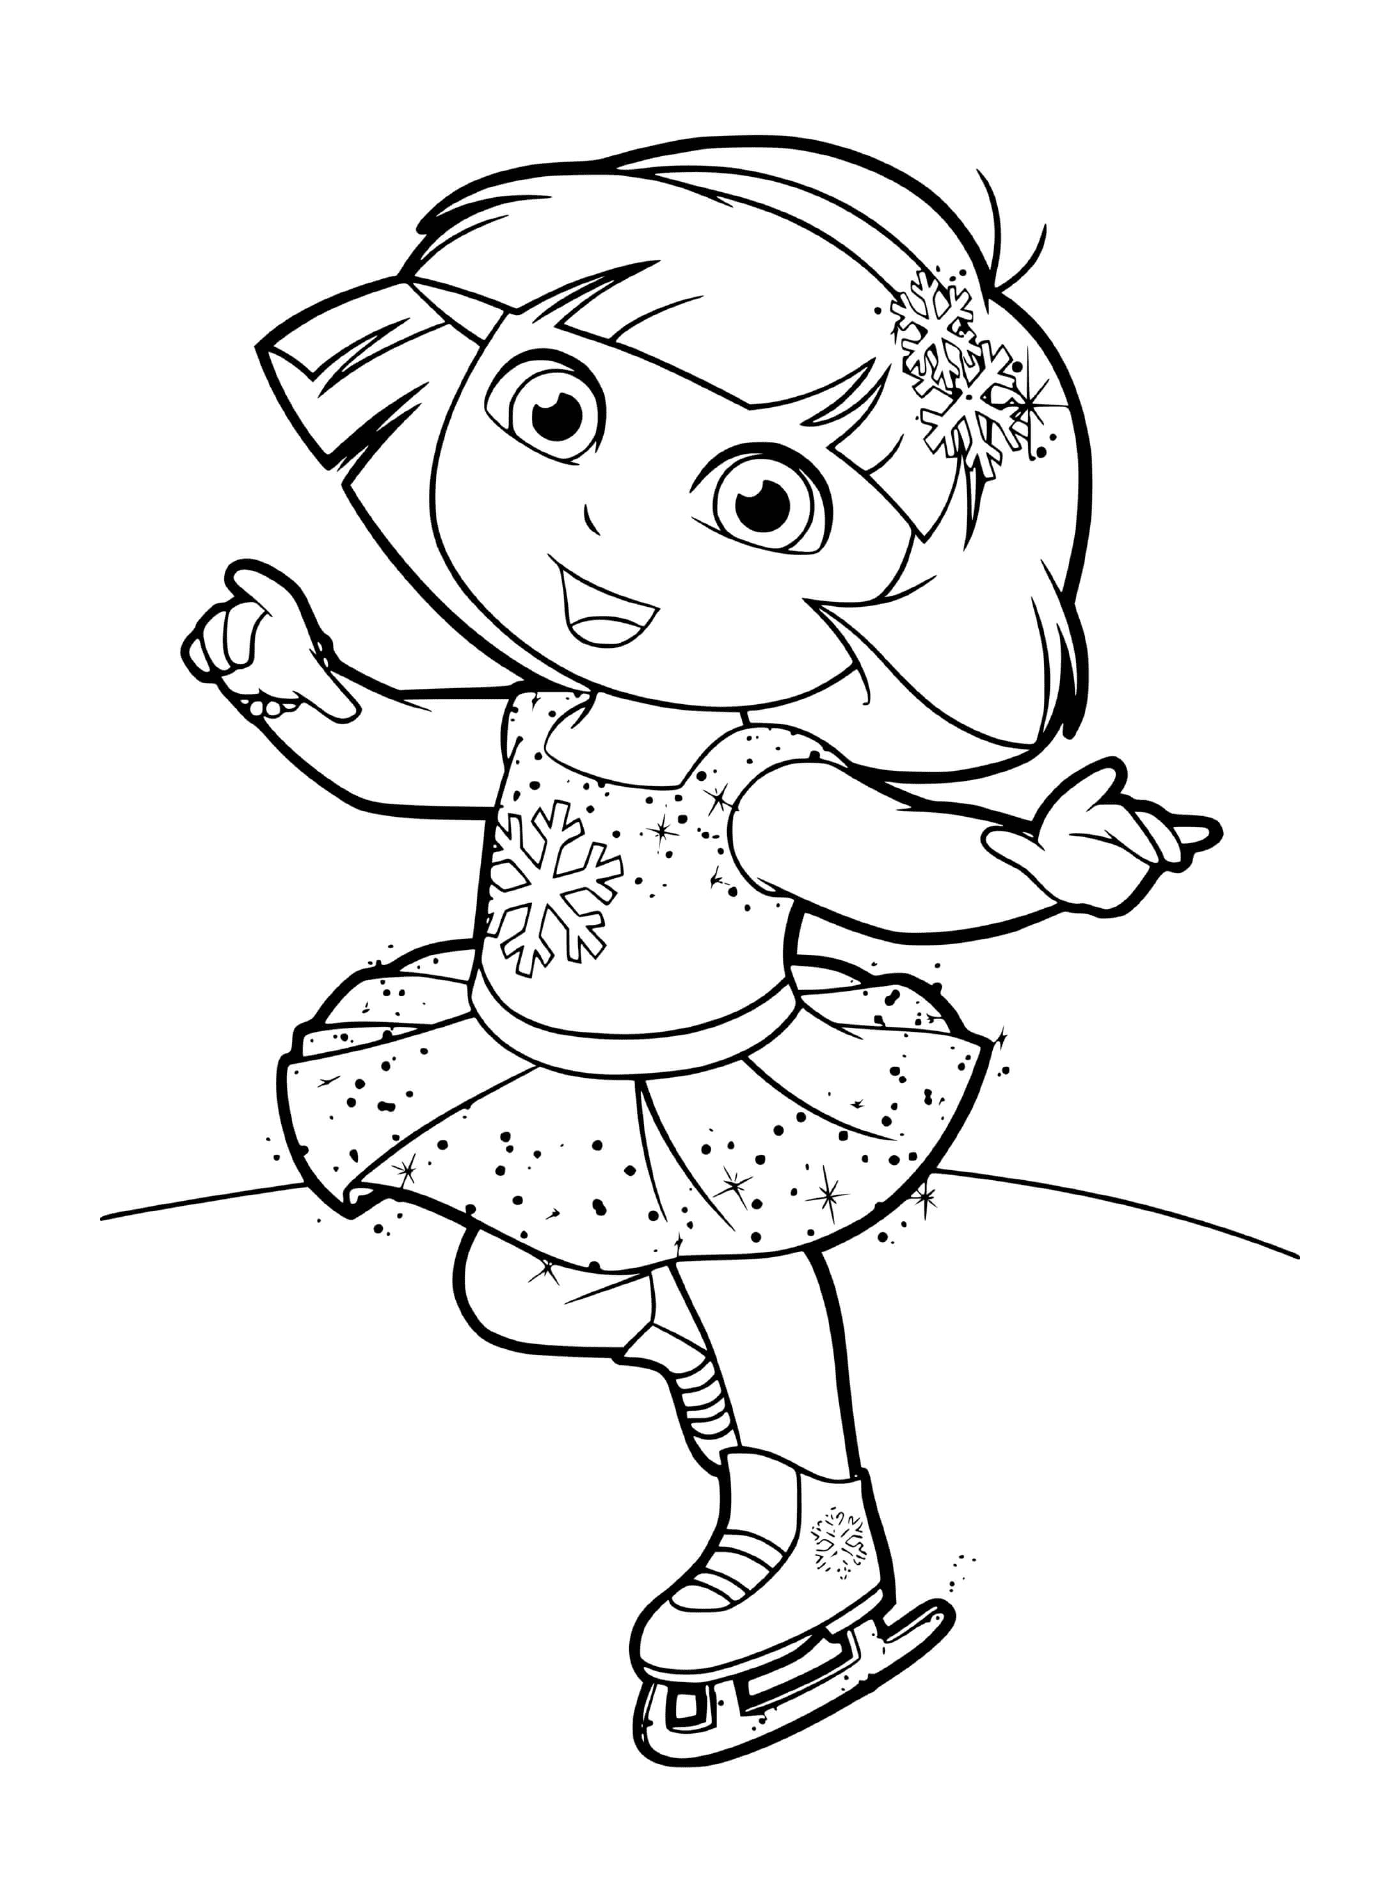   Dora pratique le patinage artistique avec grâce 